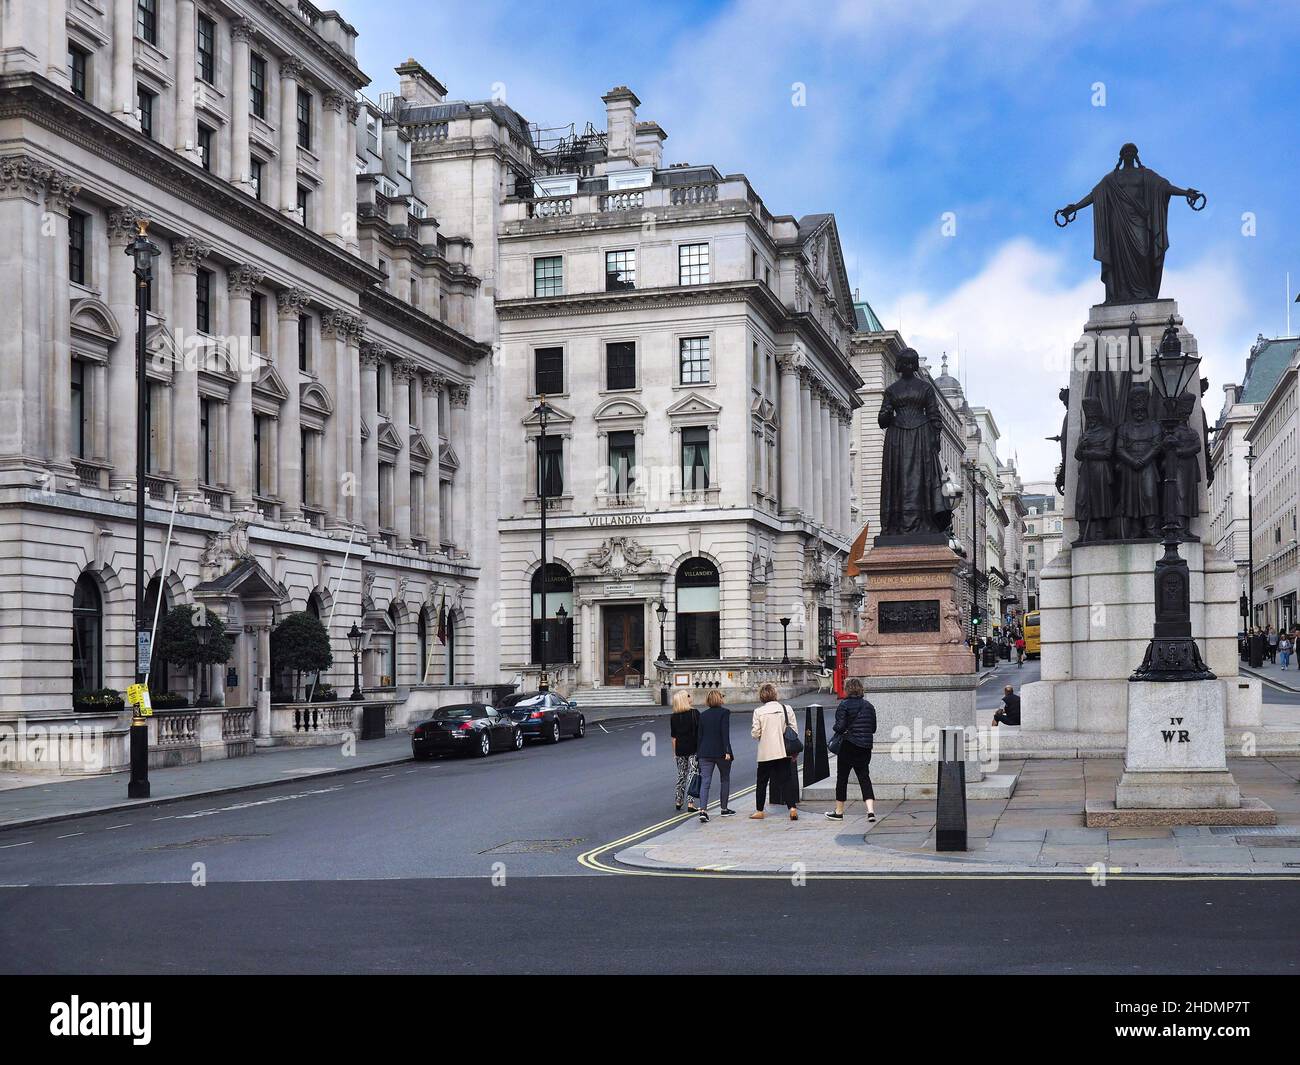 Londres, Reino Unido - 25 de septiembre de 2016: Waterloo Place en el centro de Londres, con el monumento conmemorativo de la guerra de Crimea y la estatua Florence Nightingale, esculpida en 1915 por Art Foto de stock